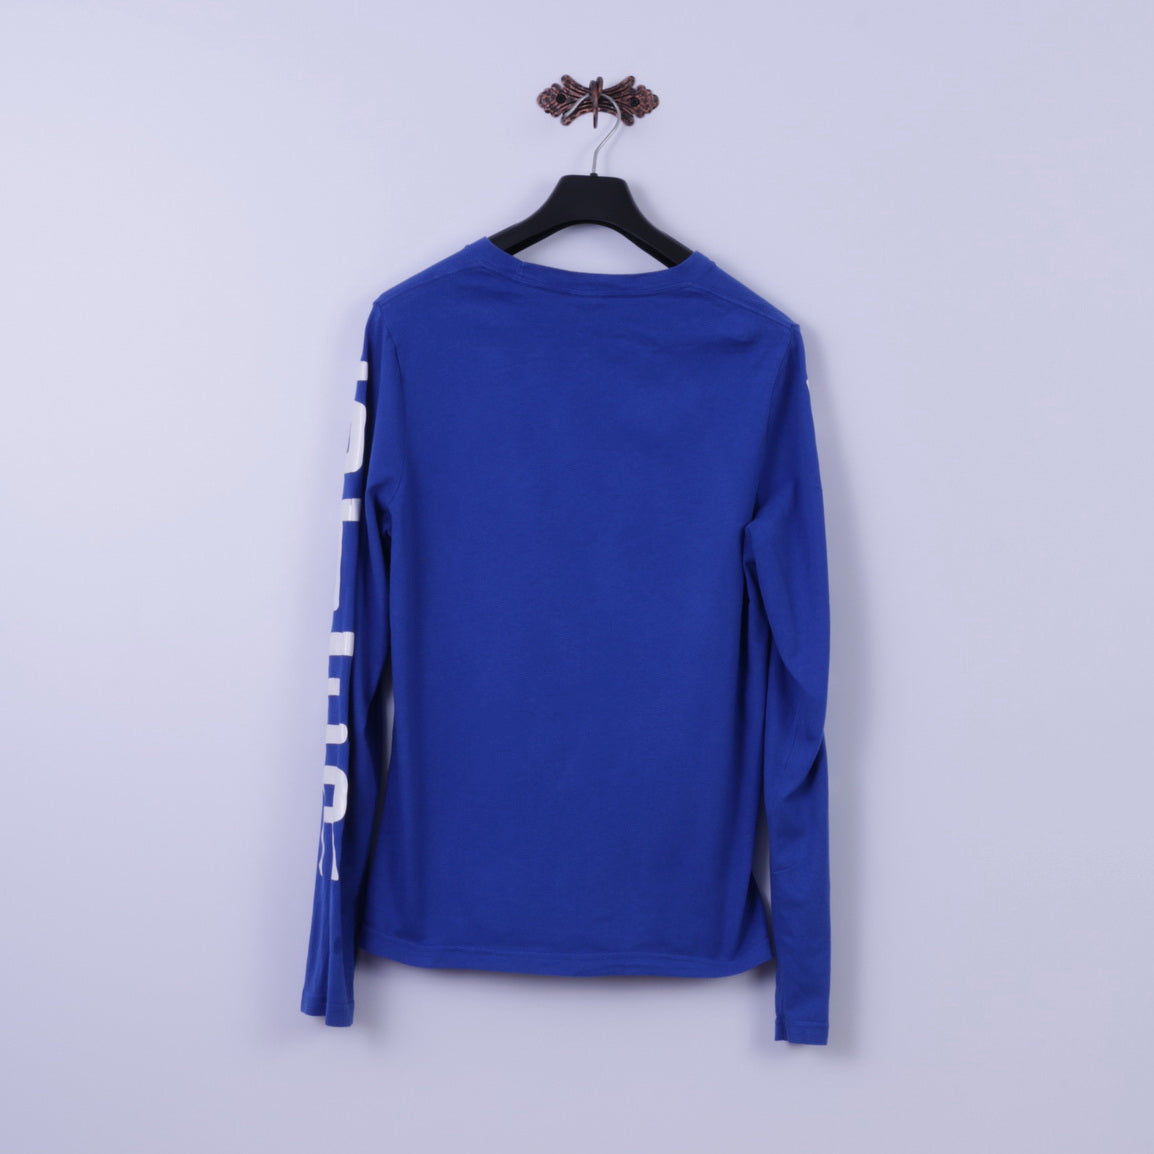 Hollister California Camicia a maniche lunghe XL da uomo in cotone blu elasticizzato Henley Top